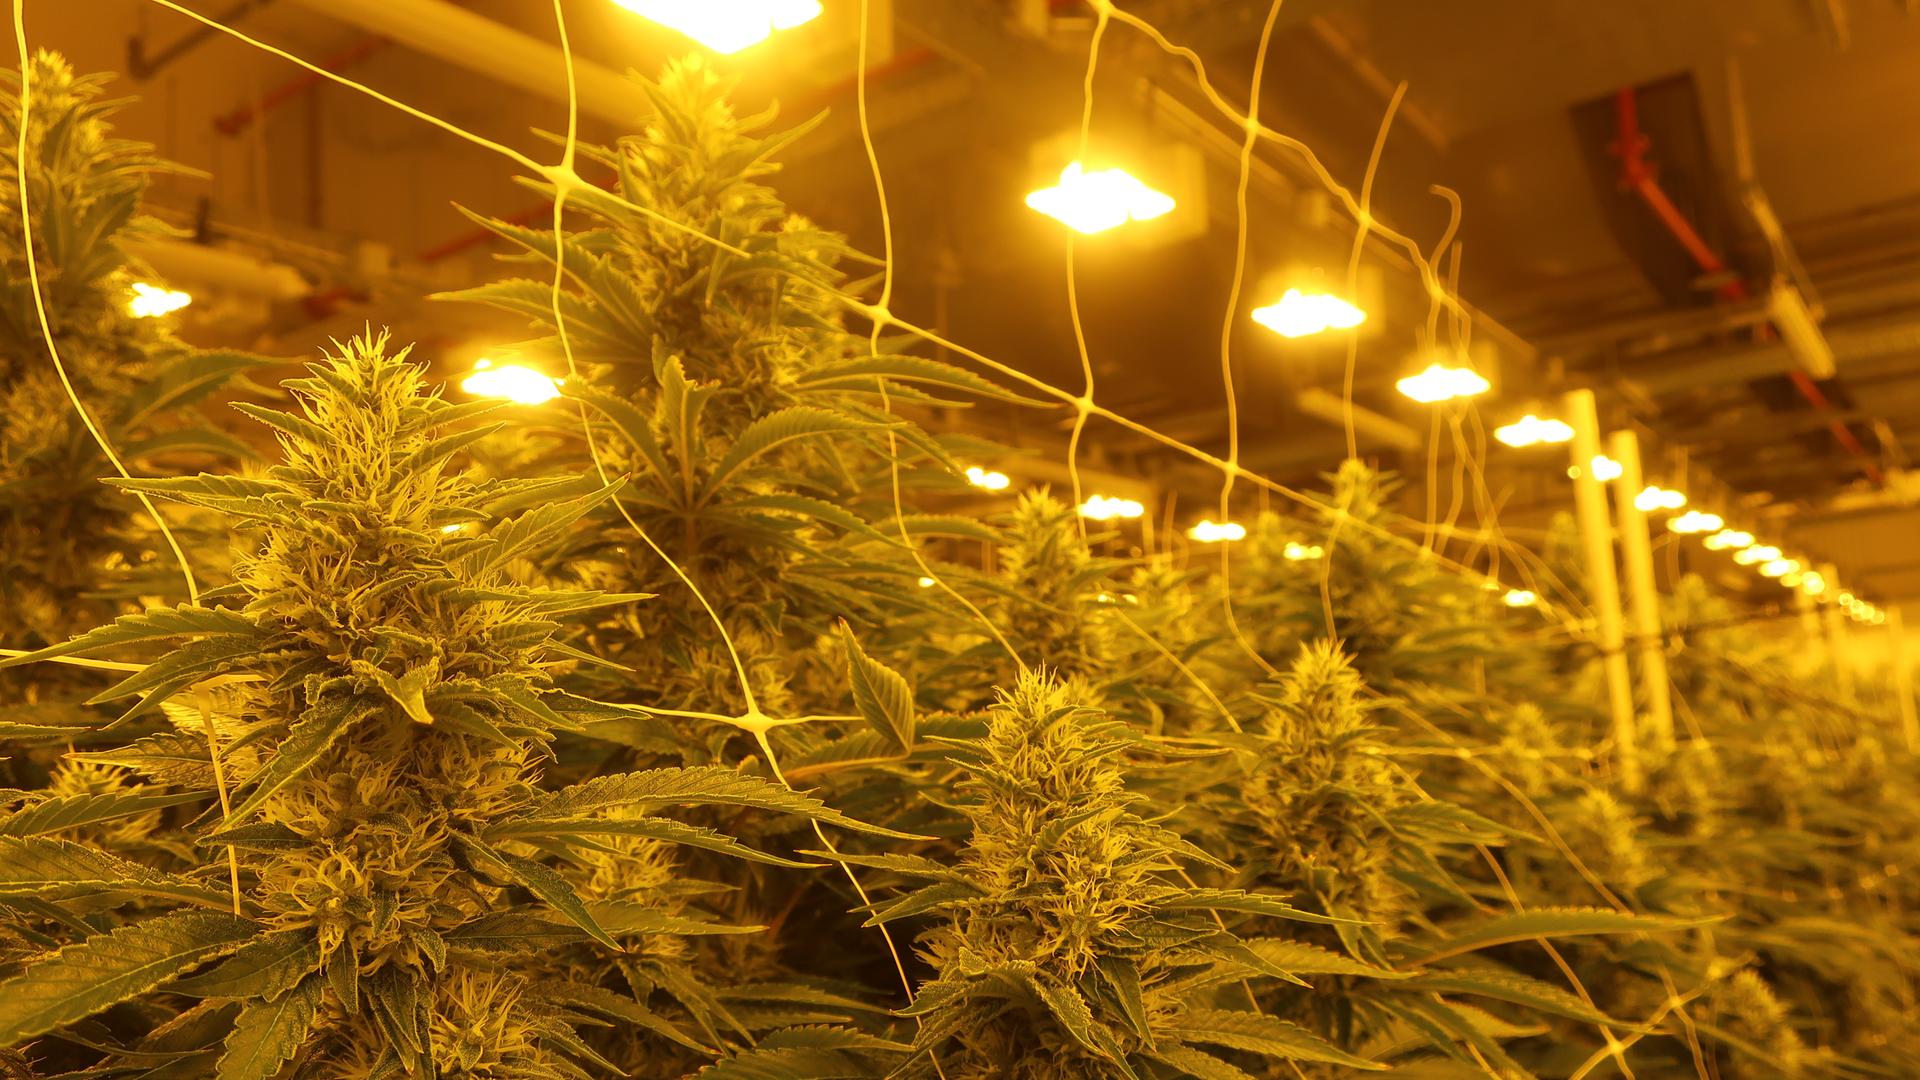 Cannabispflanzen in einem Blüteraum.